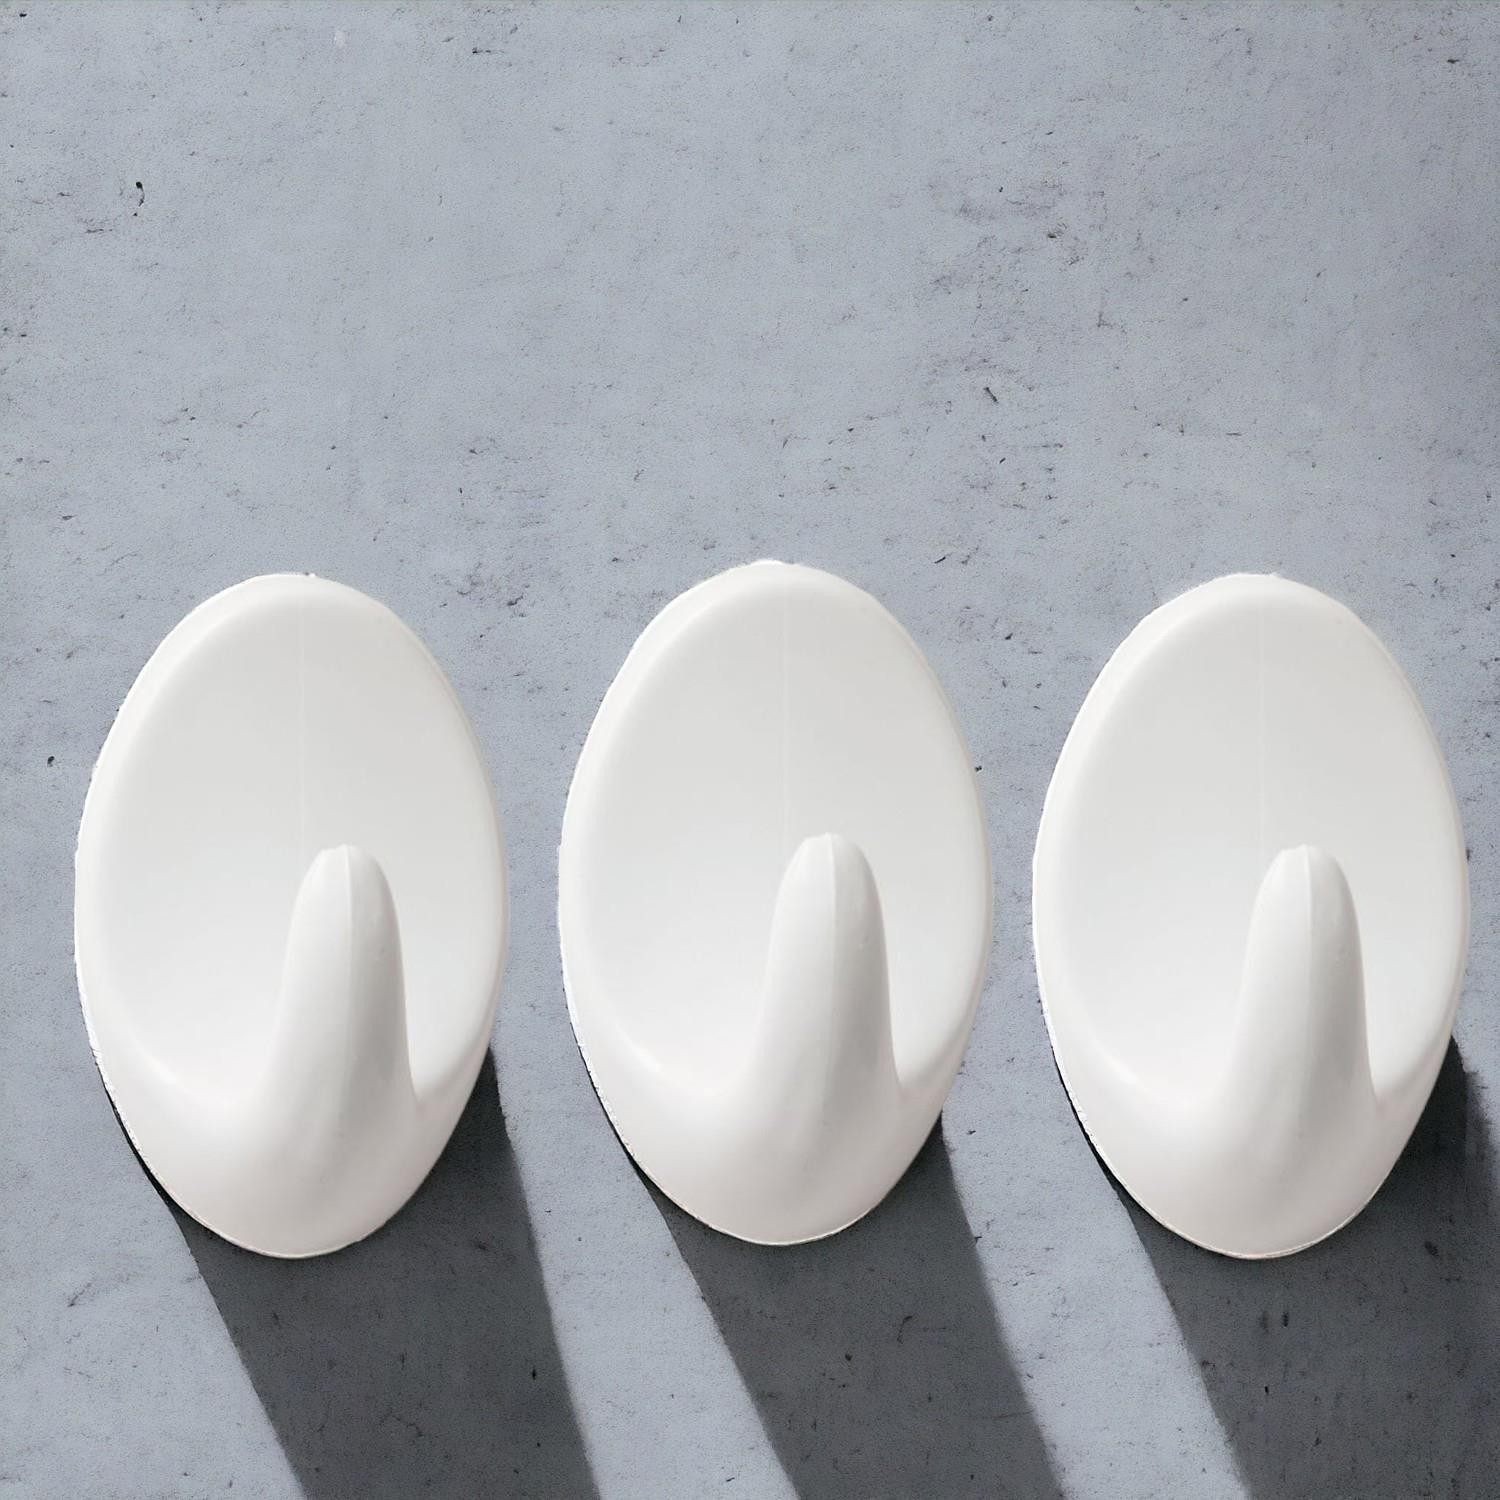 Yapışkanlı Banyo Lavabo Mutfak Askılık Beyaz Plastik Sağlam Asma İz Bırakmayan Askı 3 Adetli Set 